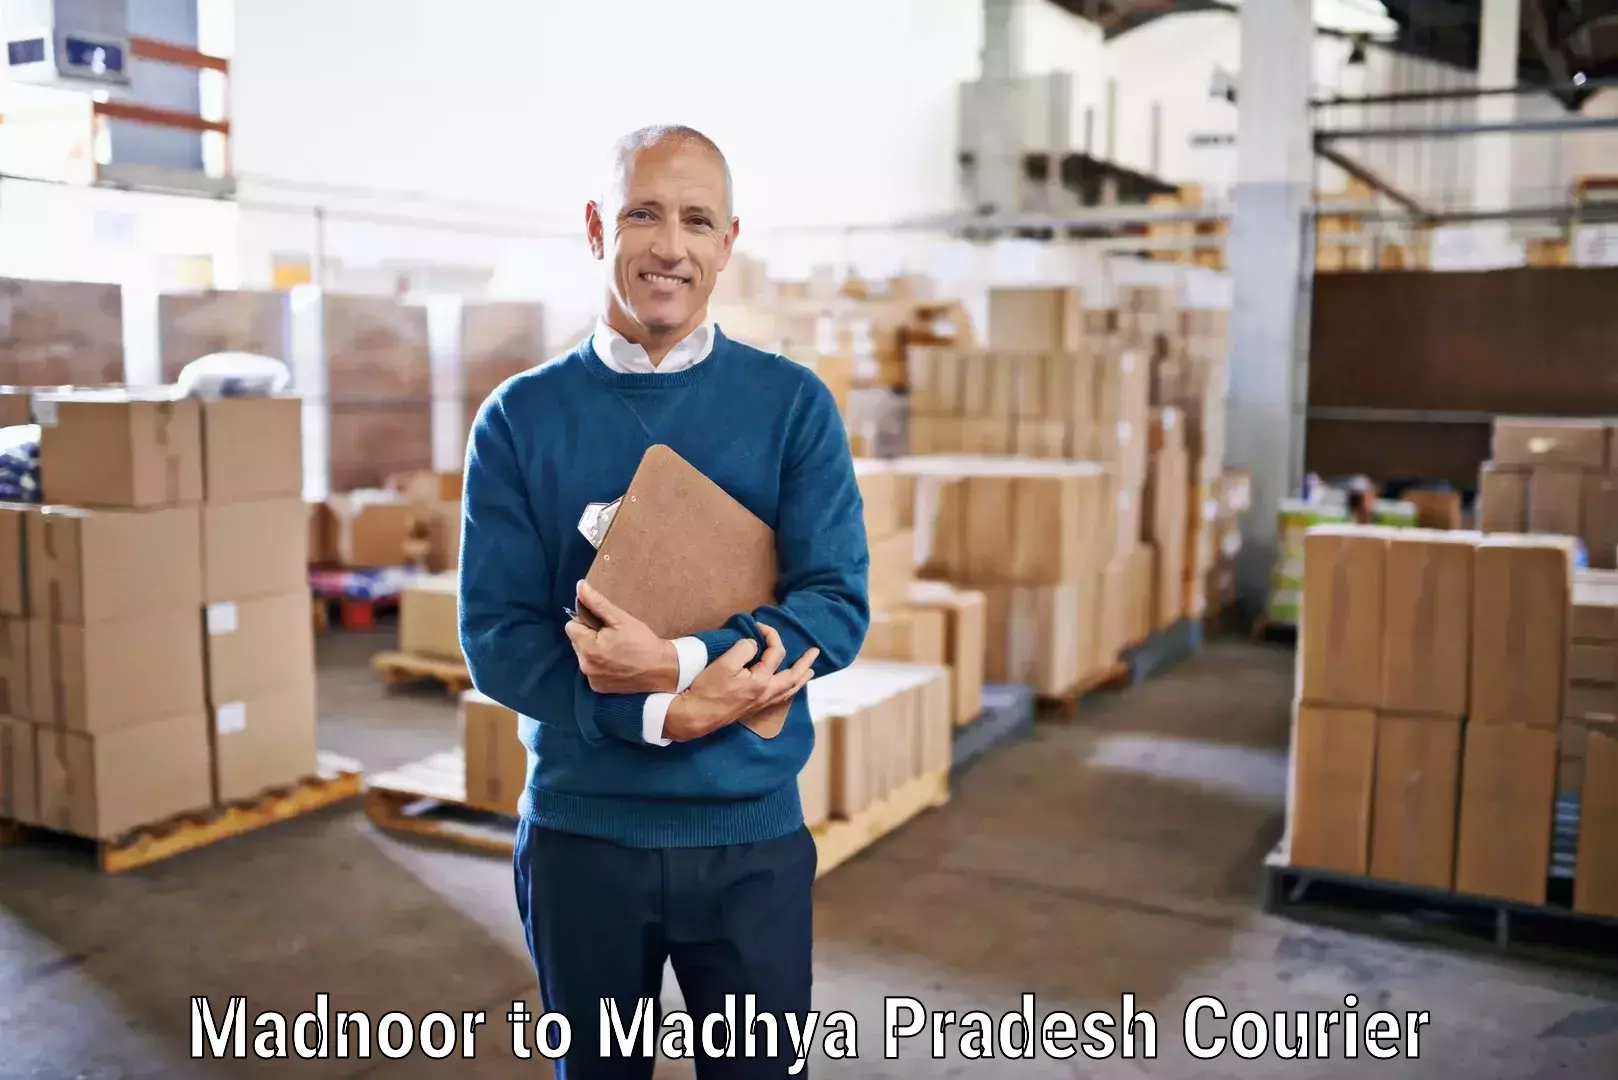 Urgent courier needs Madnoor to Ratlam